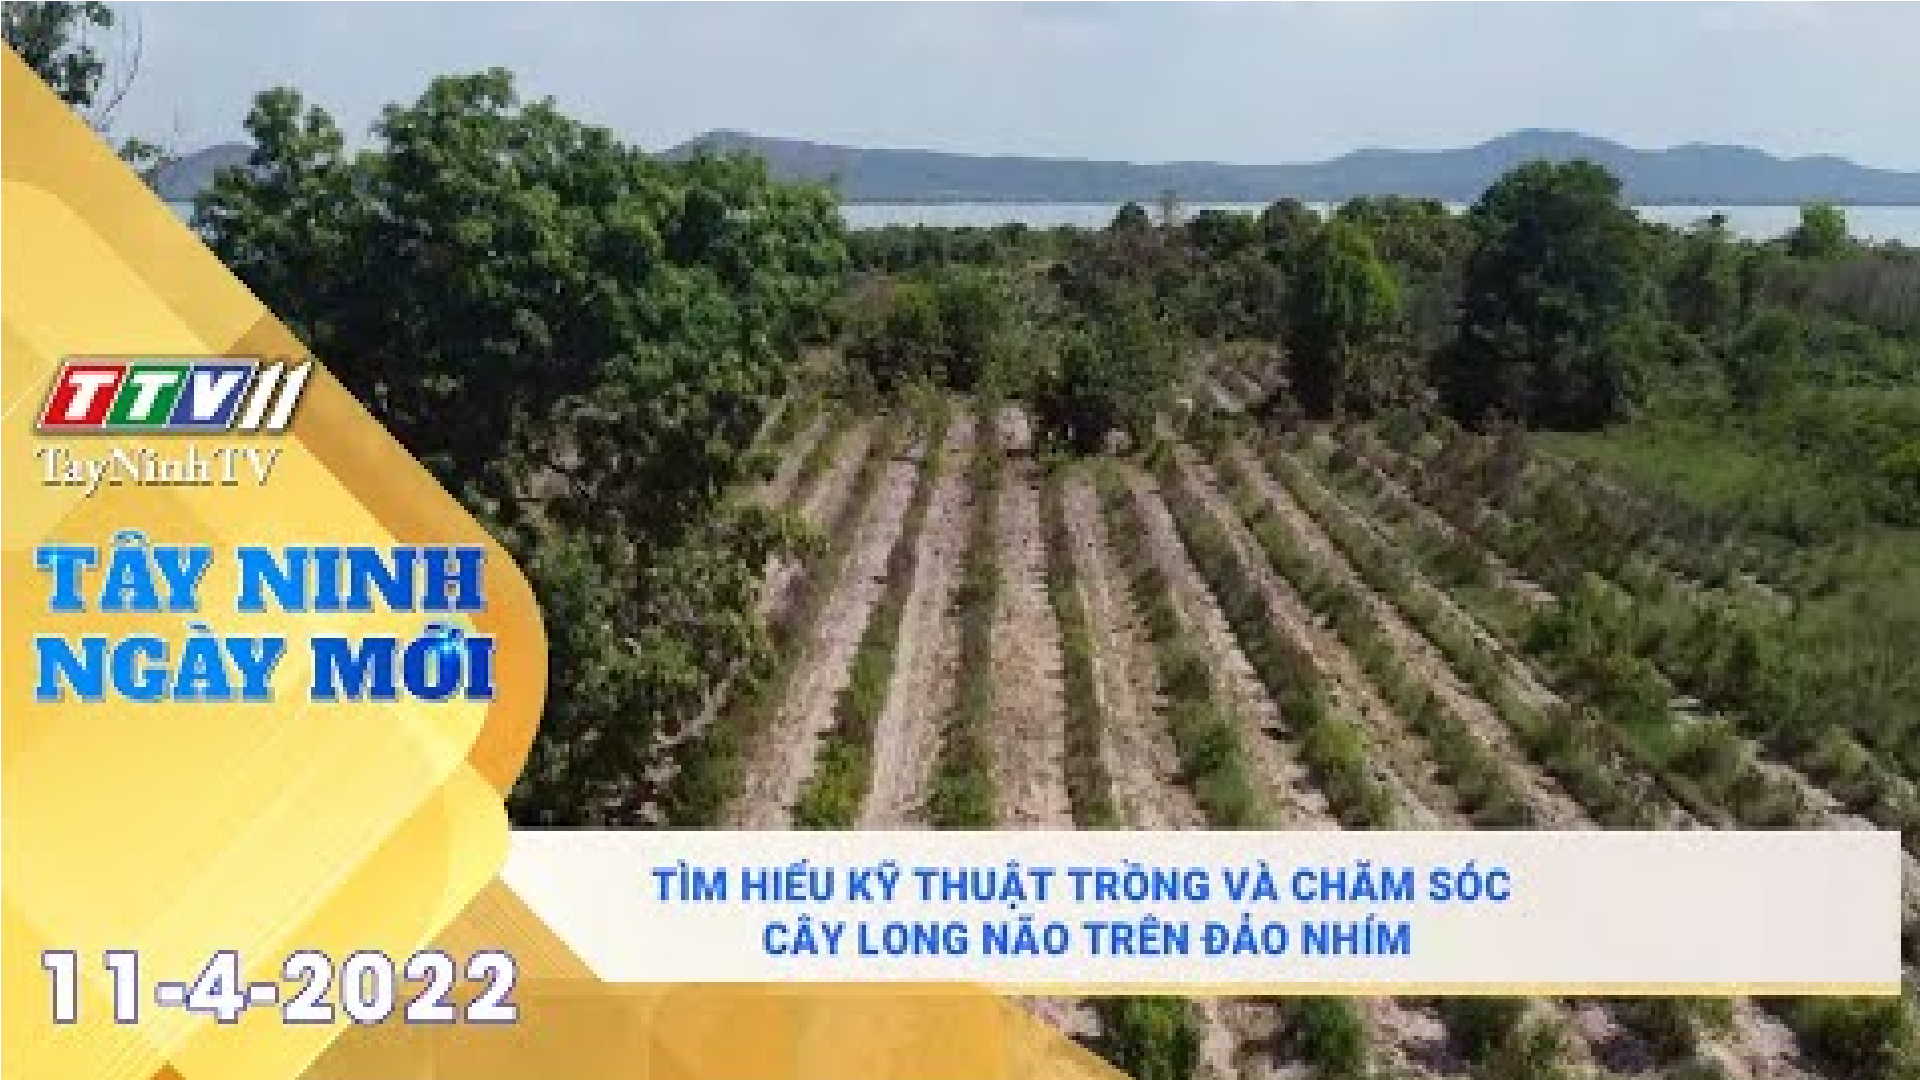 Tây Ninh ngày mới 11-4-2022 | Tin tức hôm nay | TayNinhTV